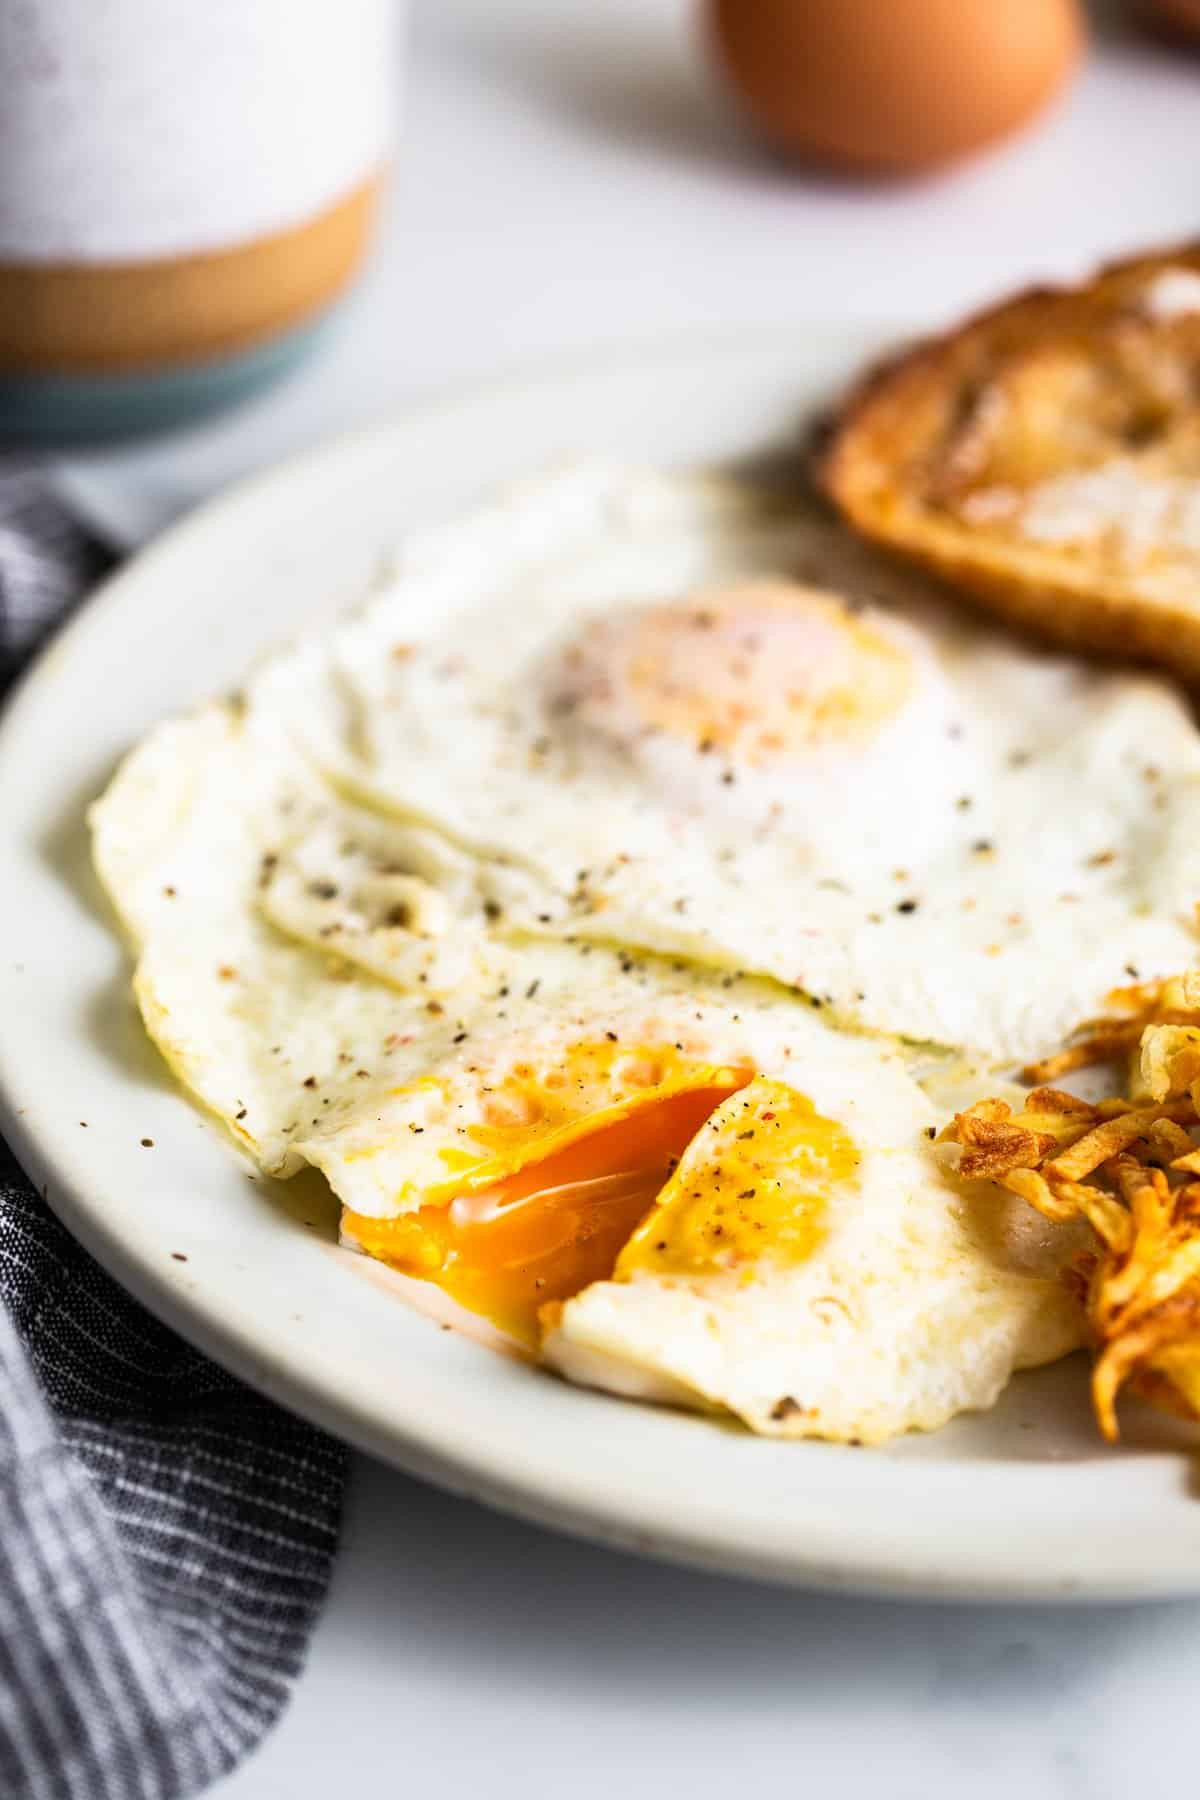 Over medium eggs on a plate.